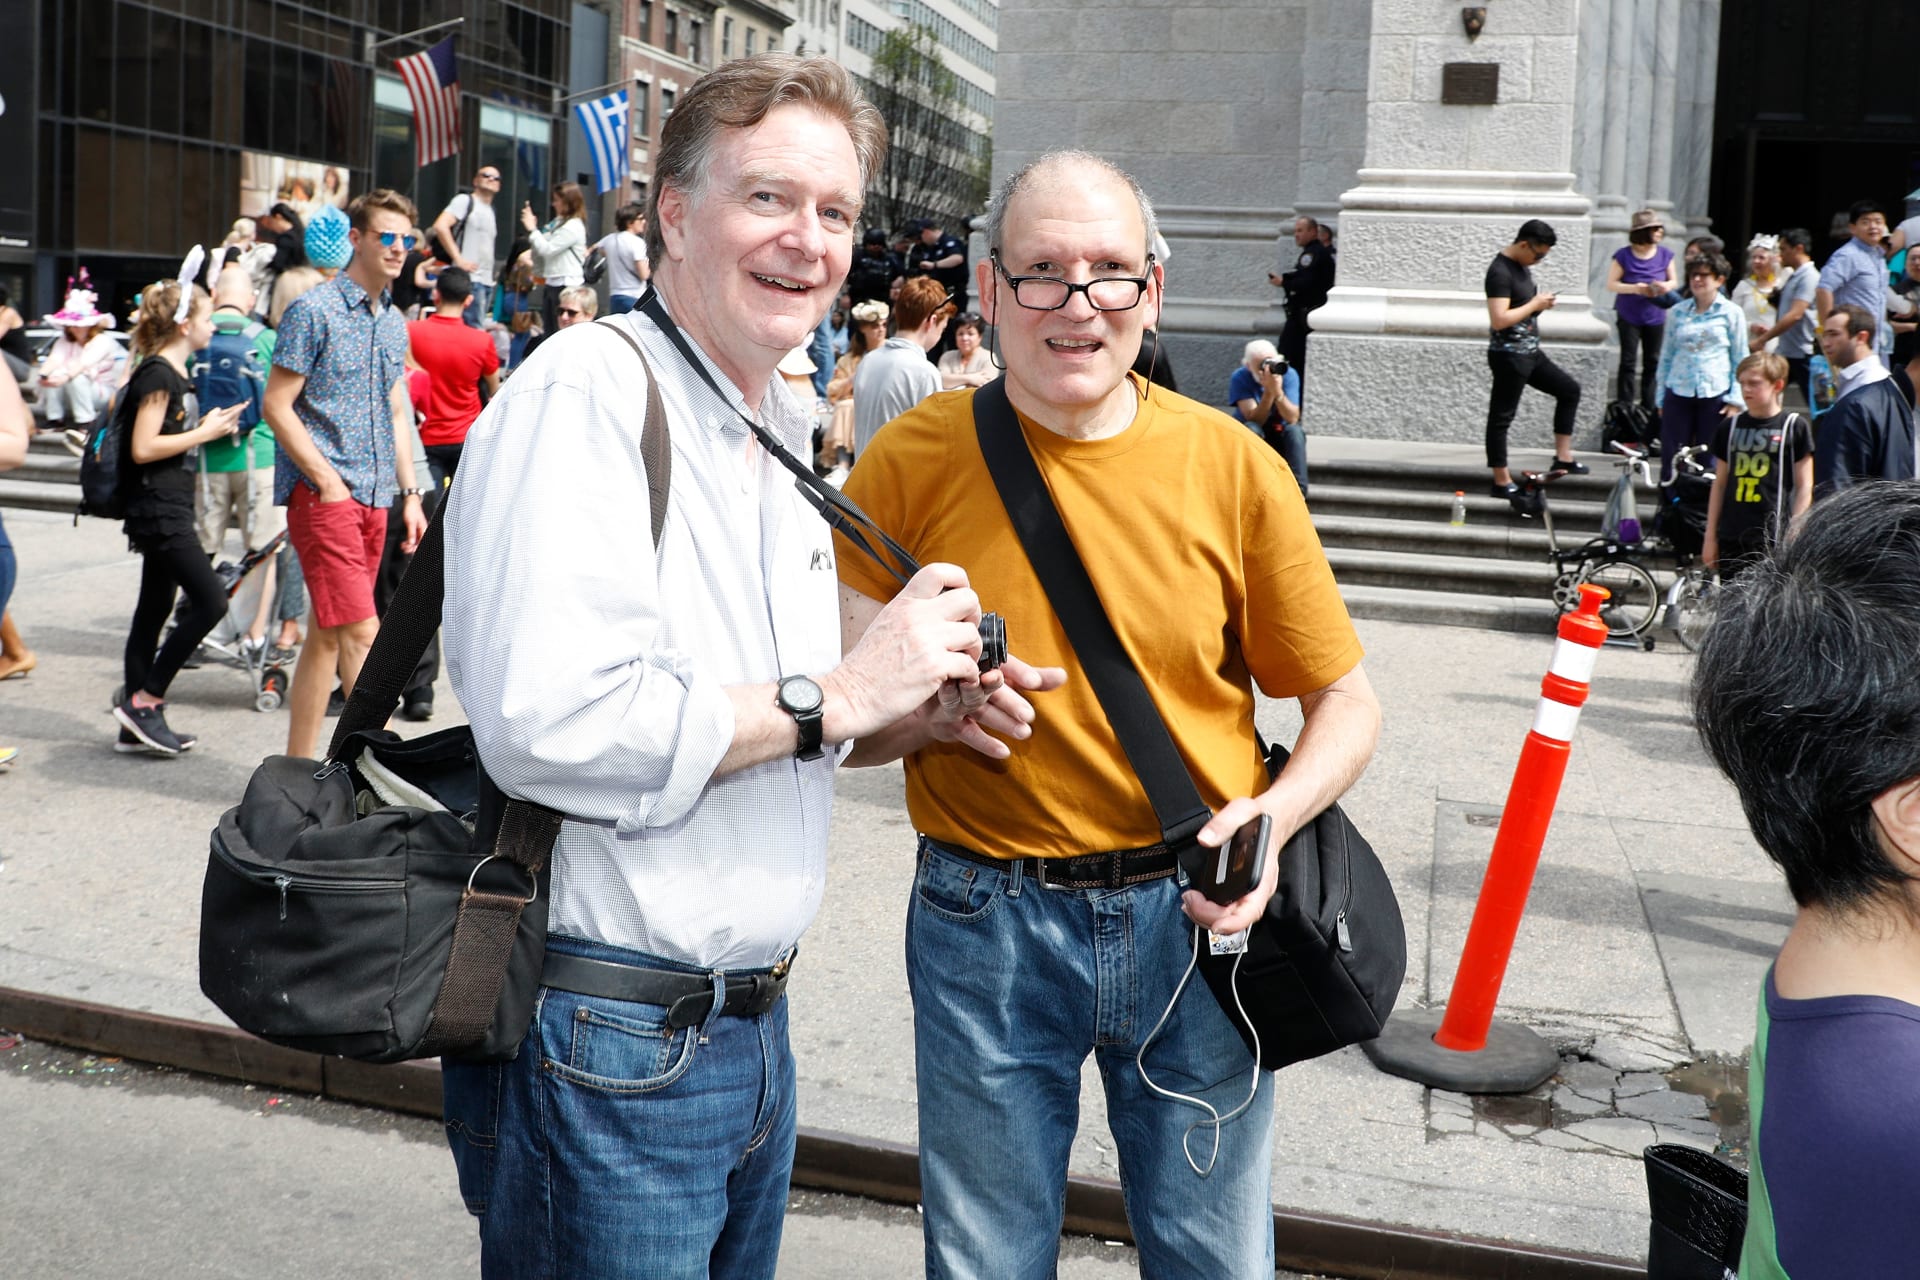 Fotograf Jeff Mermelstein (vpravo) se rozhodl fotit lidem přes rameno jejich zprávy. 